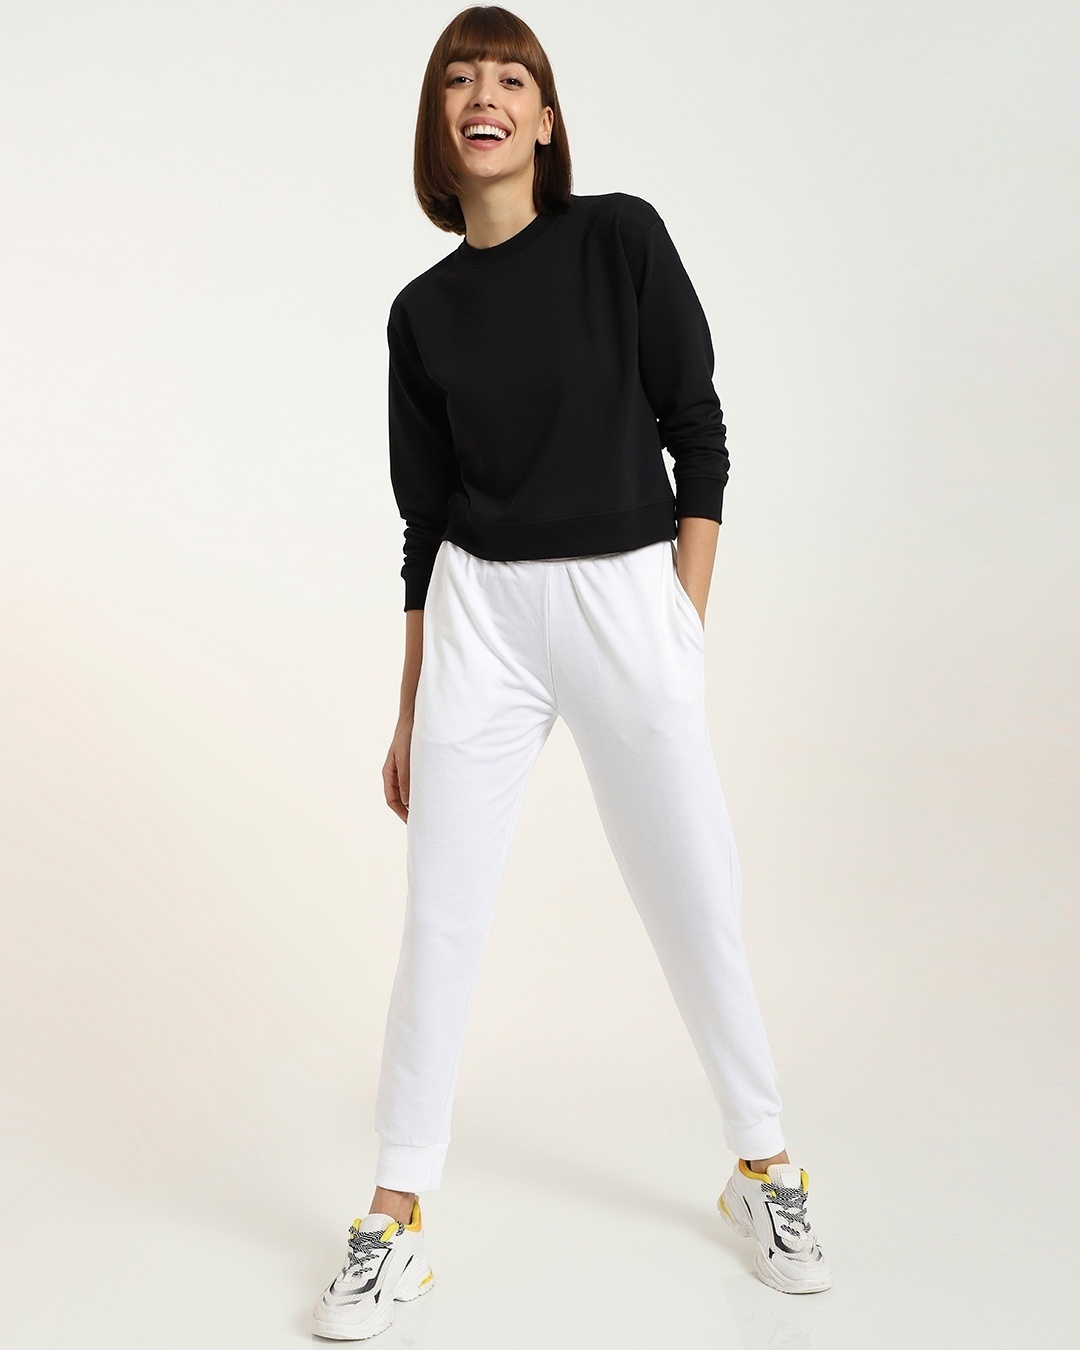 Shop Women's Solid Short Black Sweatshirt